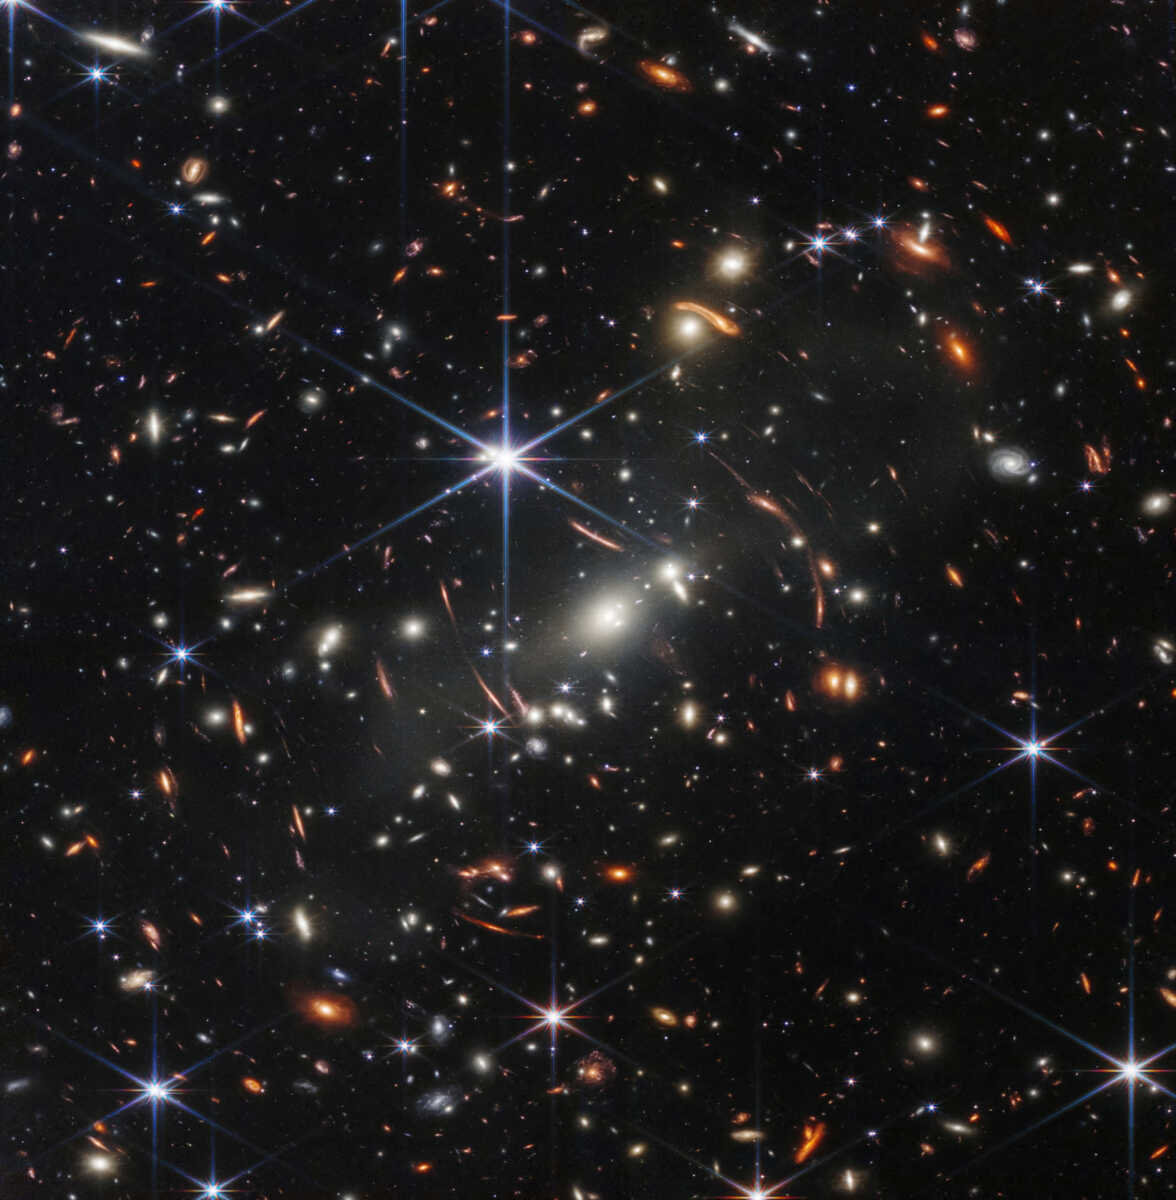 Δέος! Η πρώτη έγχρωμη φωτογραφία από το πανίσχυρο τηλεσκόπιο James Webb - Πως ήταν το σύμπαν πριν 13 δισ. χρόνια